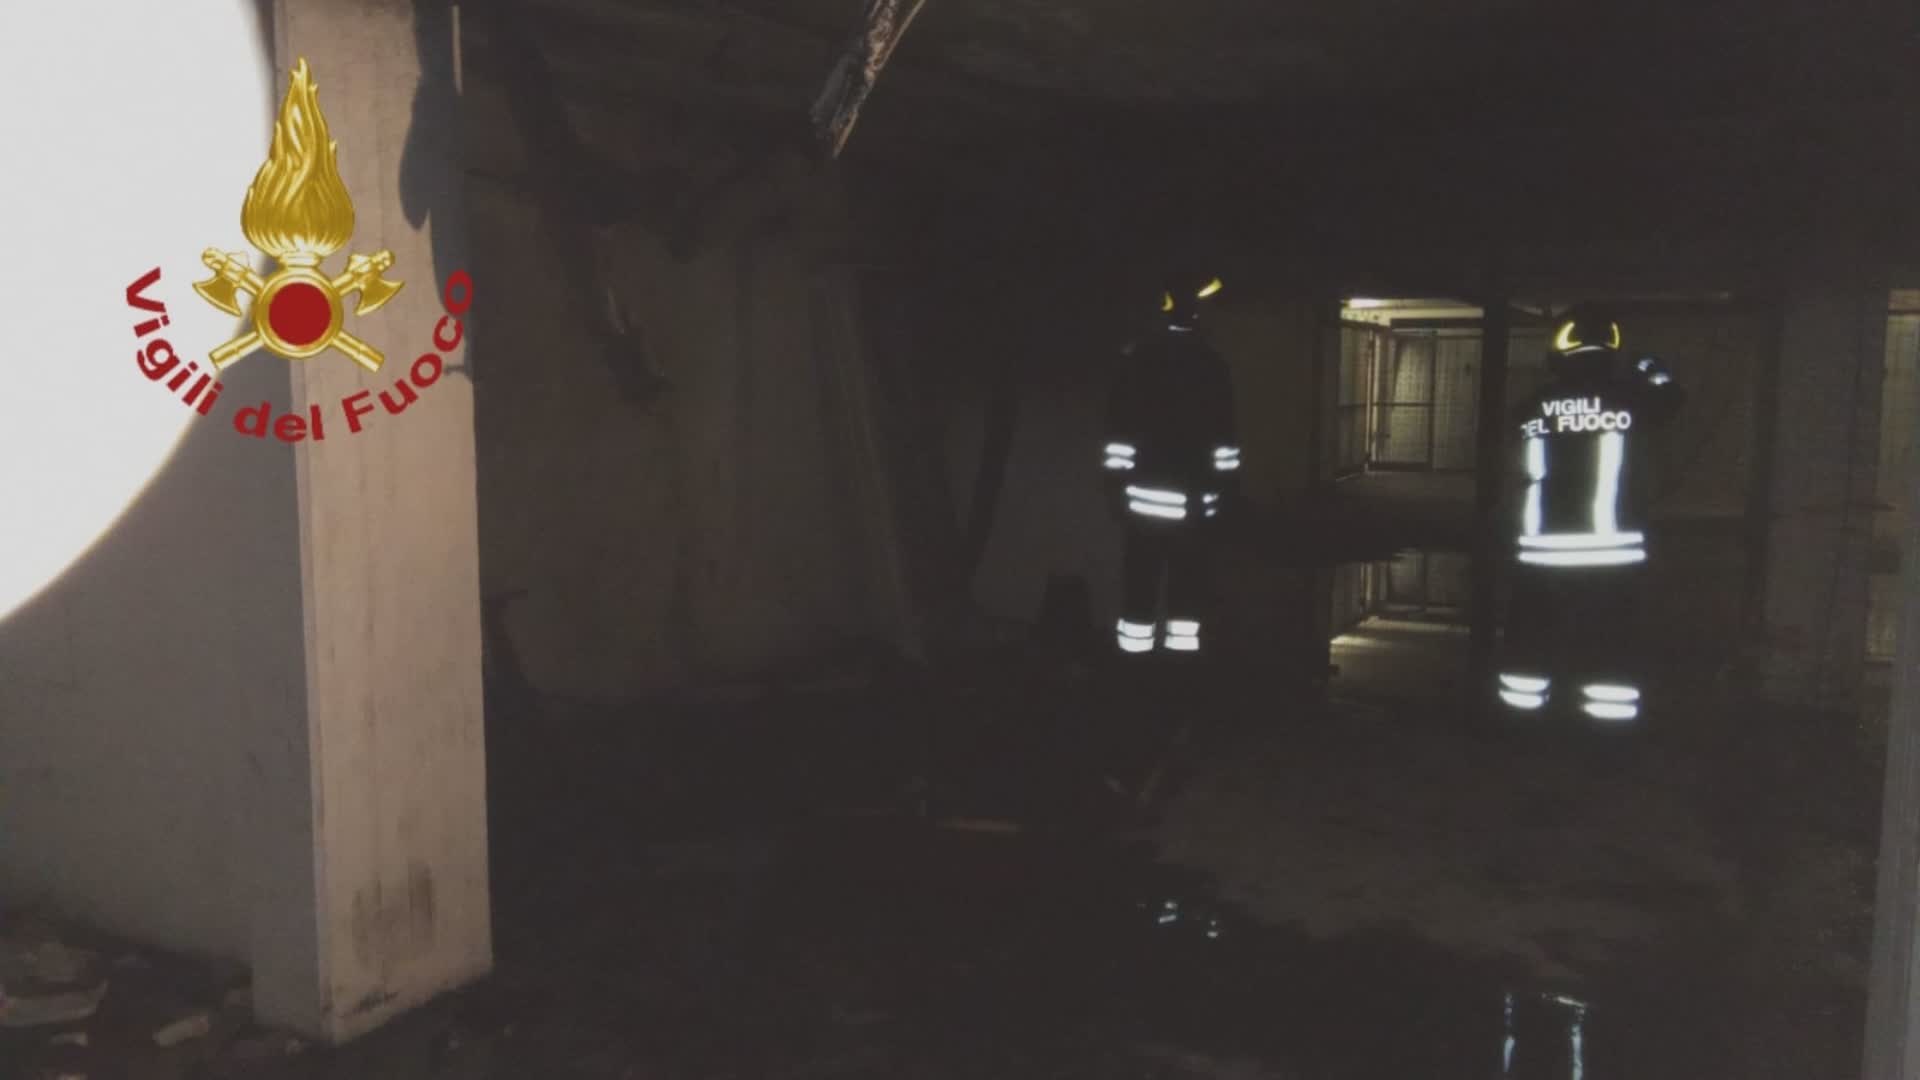 Incendio in garage in centro storico, a fuoco un divano